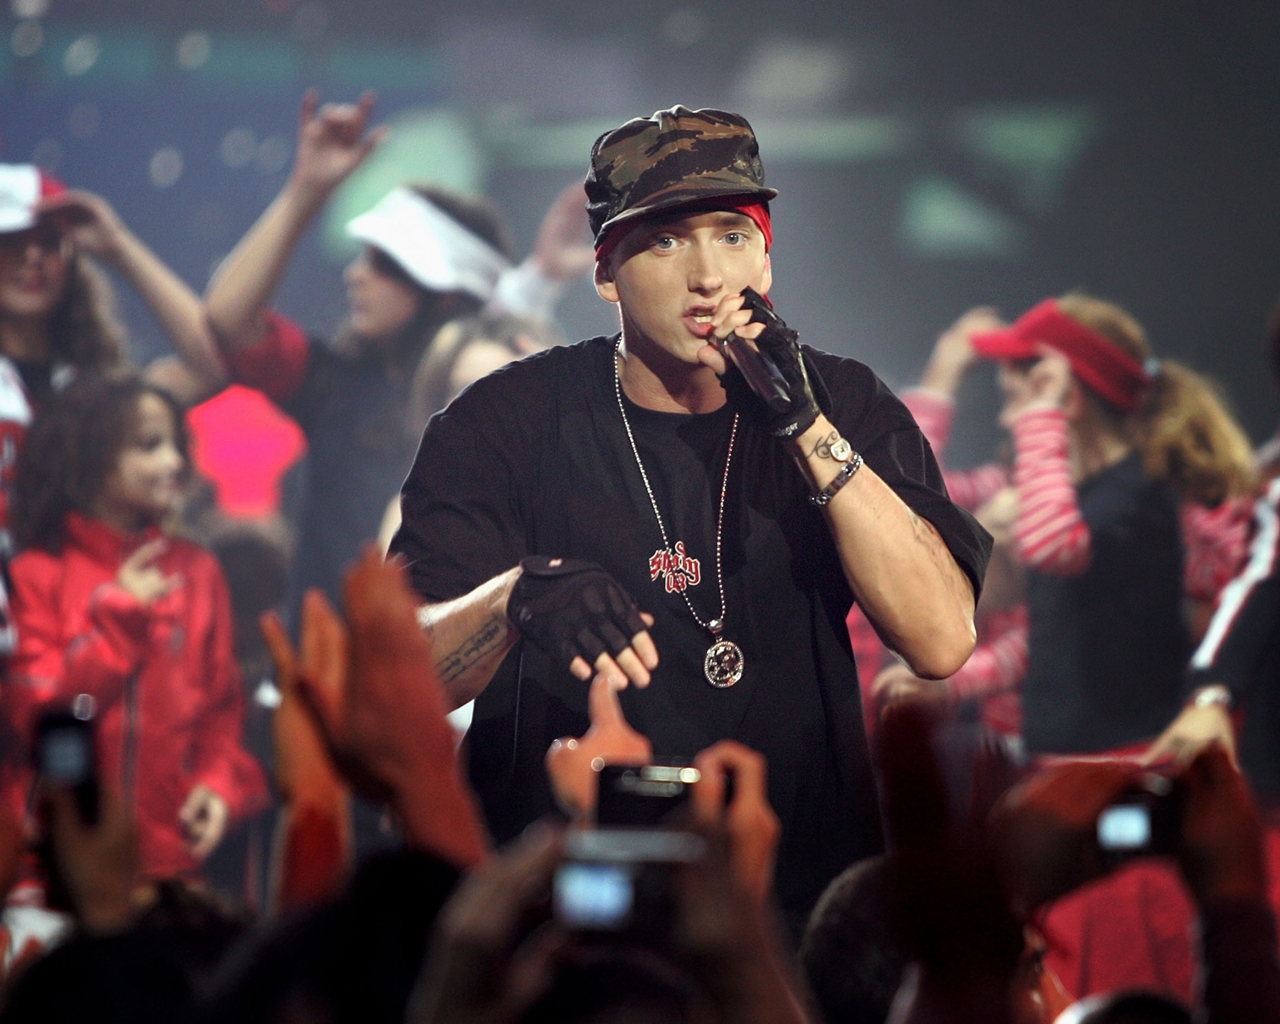 Eminem 2012